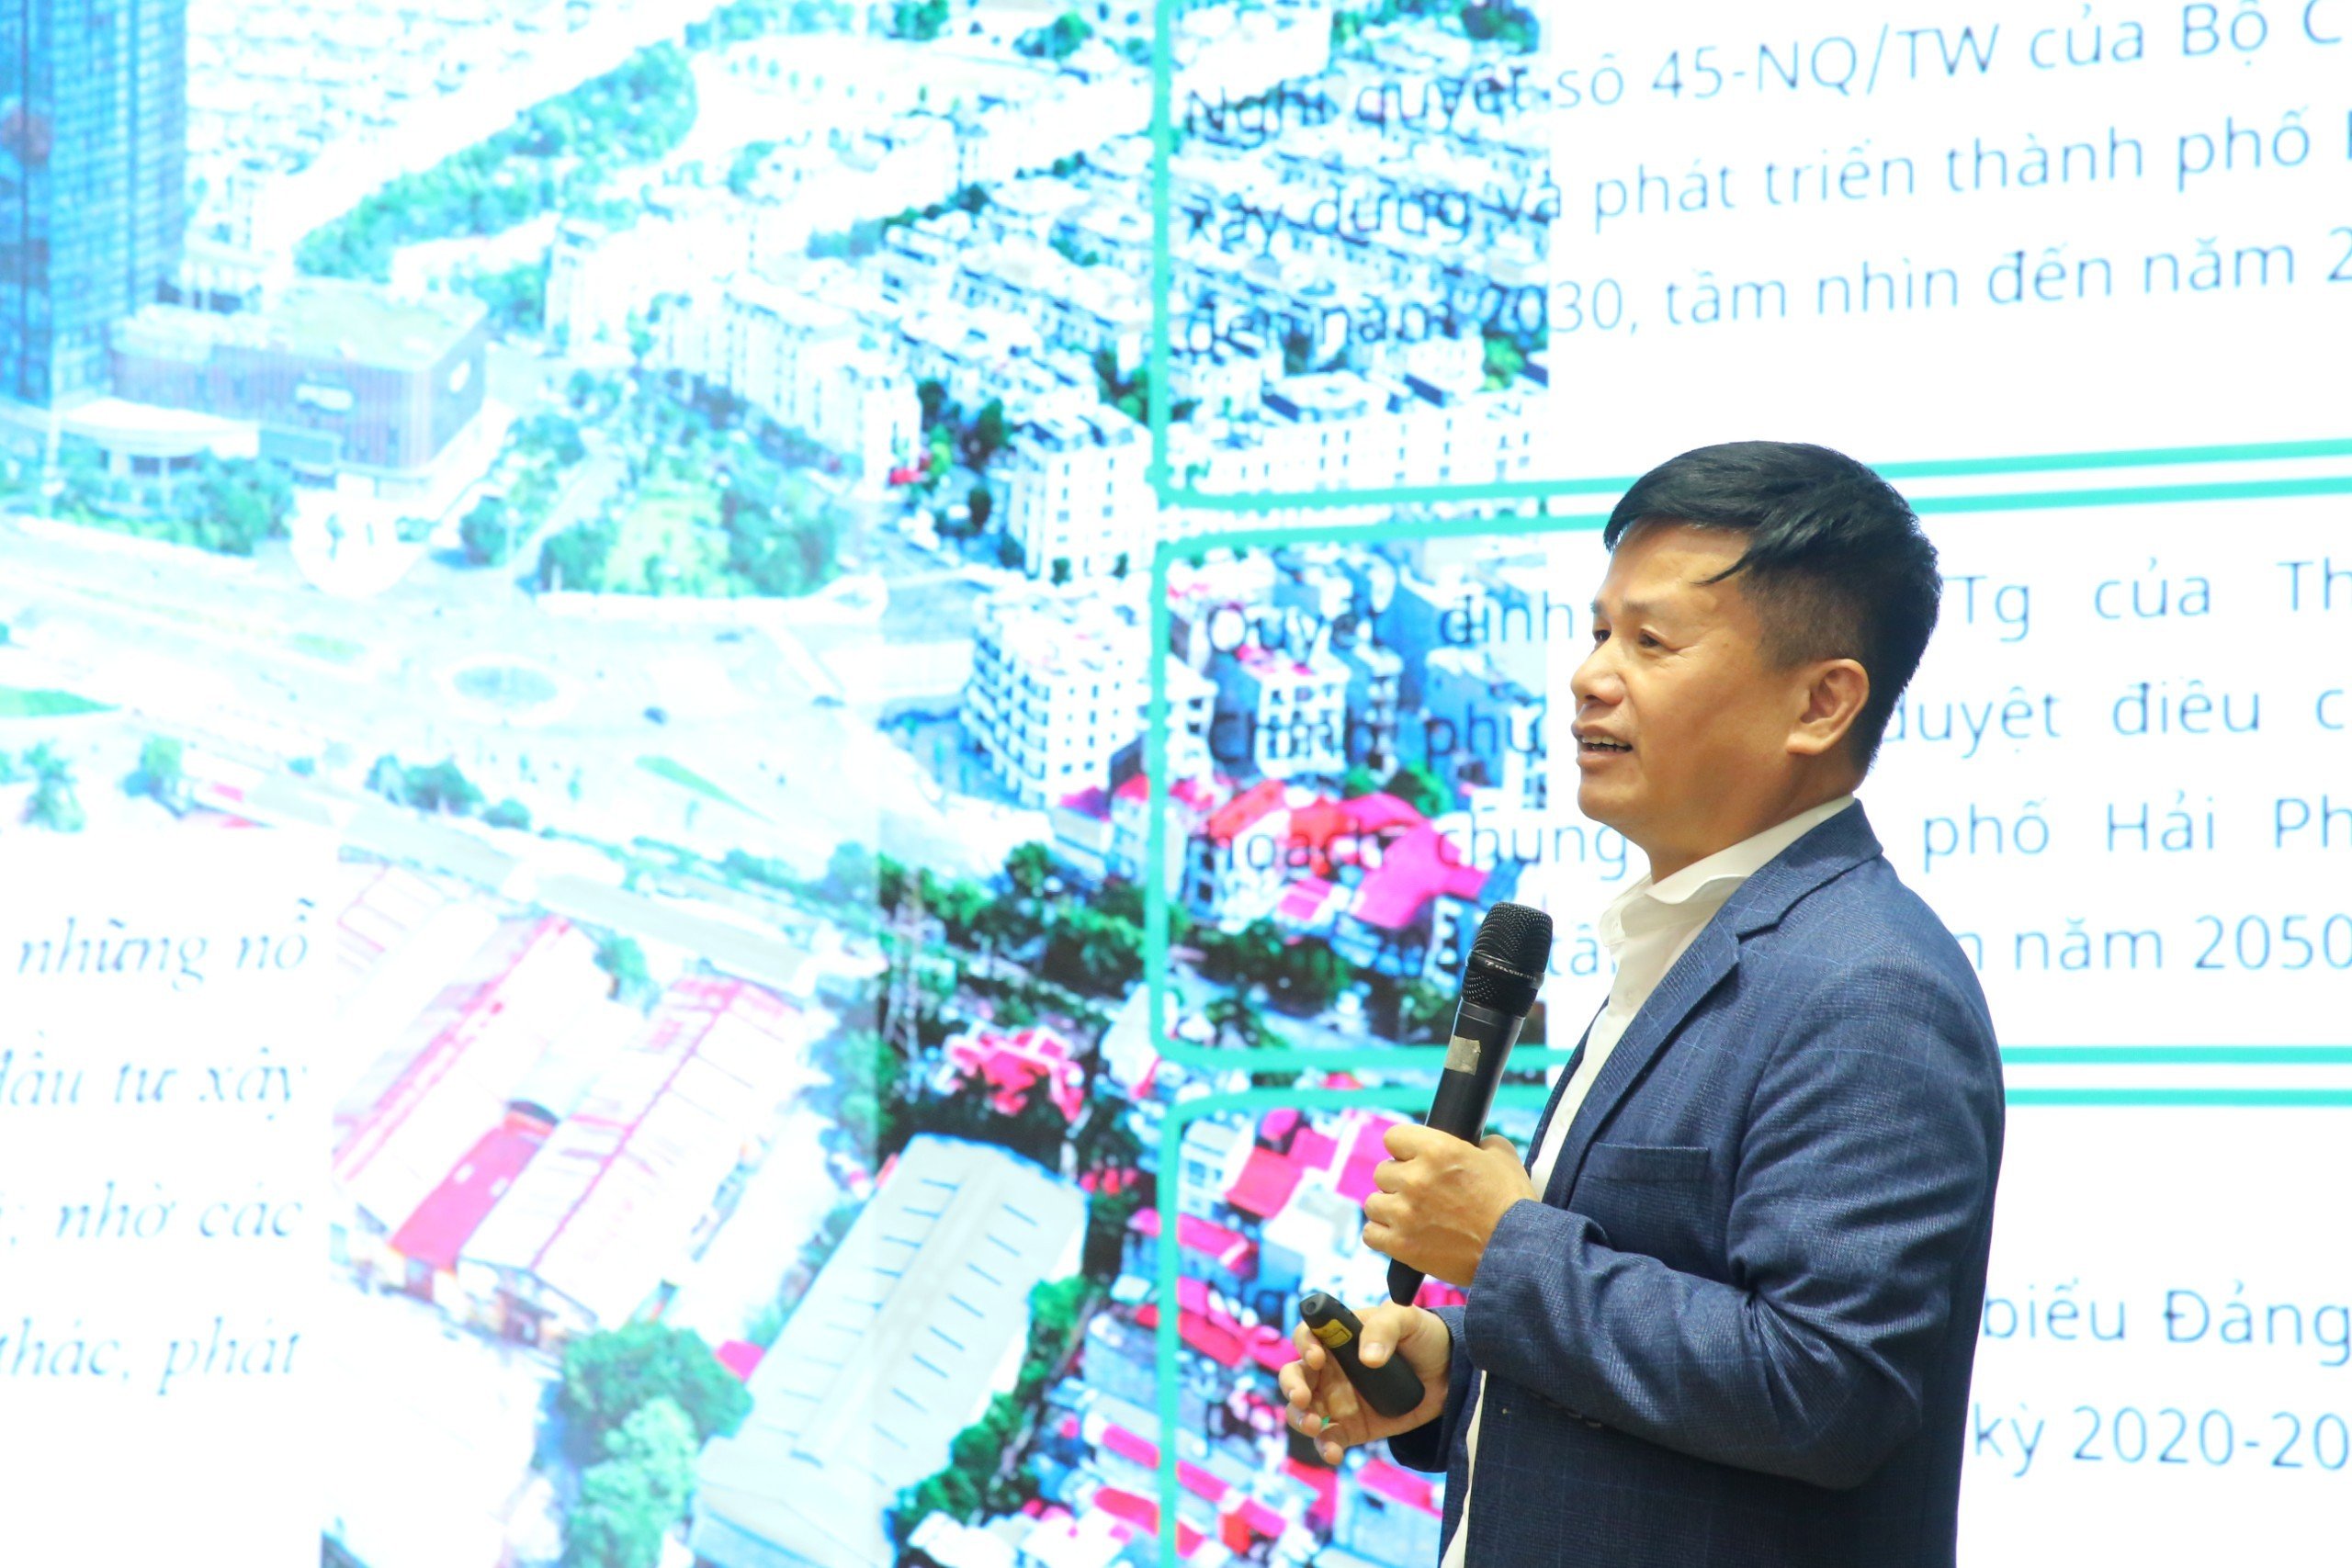 Đại diện doanh nghiệp, ông Phạm Hồng Điệp, Chủ tịch HĐQT Công ty CP Shinec, CĐT Khu Công nghiệp Nam Cầu Kiền